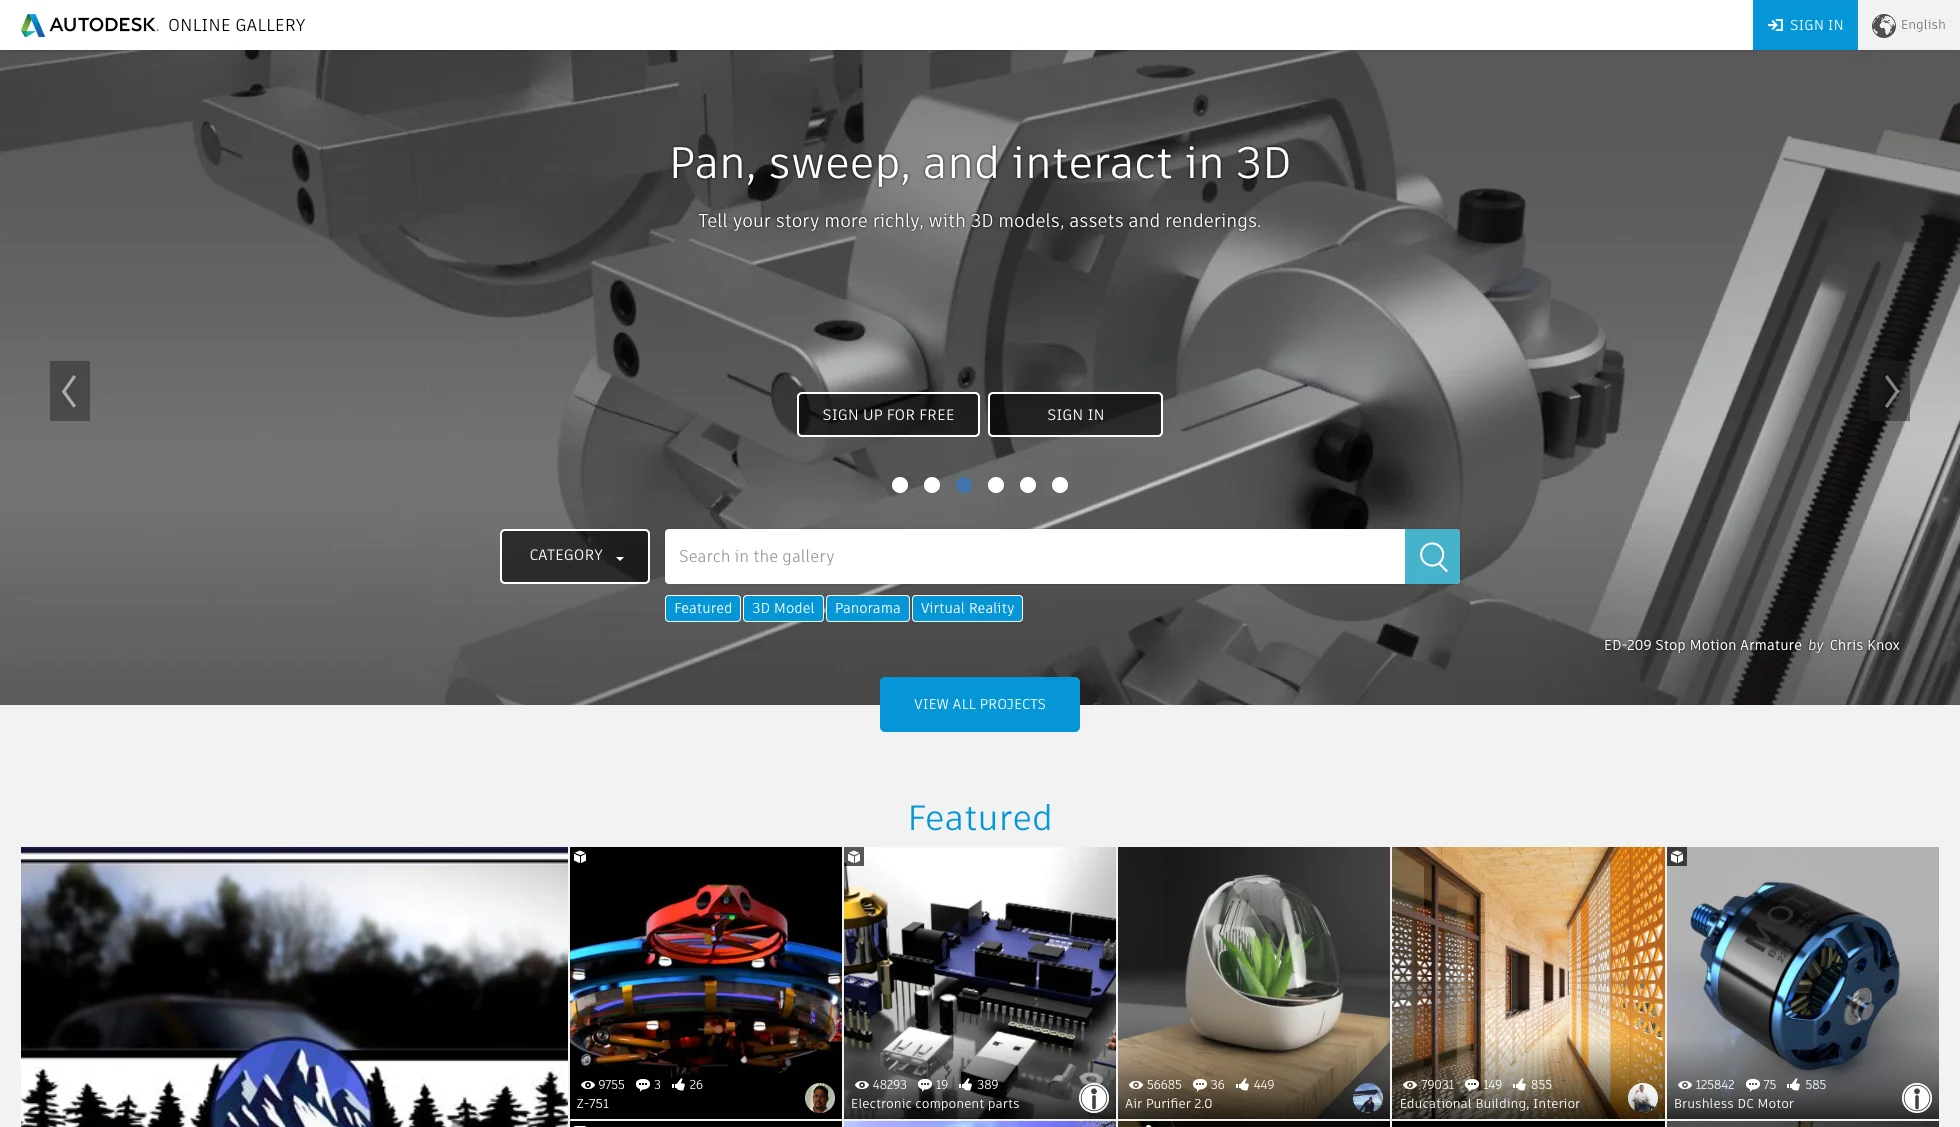  Autodesk Online Gallery